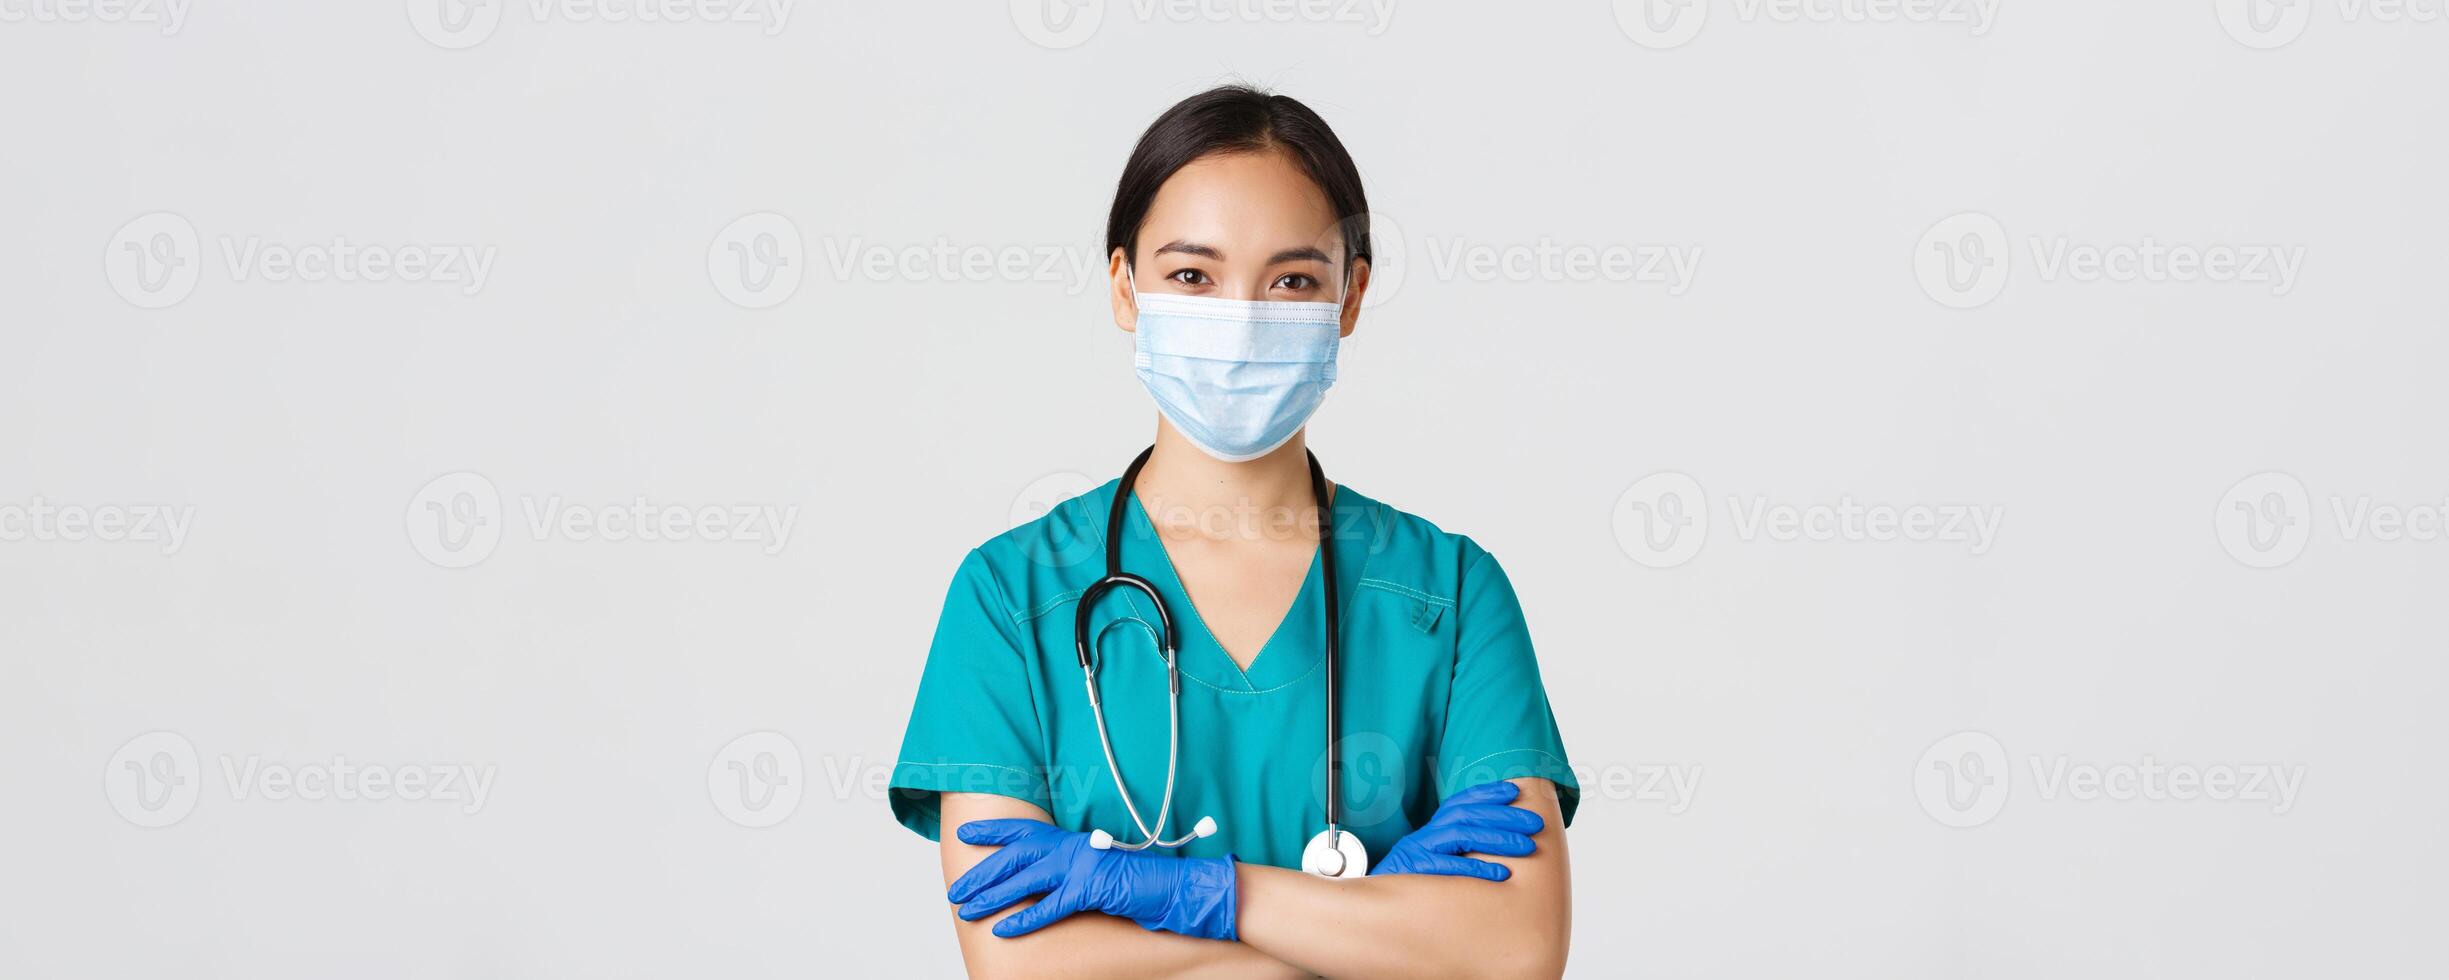 covid19, coronavirus sjukdom, sjukvård arbetare begrepp. närbild av självsäker leende, professionell asiatisk läkare, sjuksköterska i medicinsk mask och sudd handskar redo för undersökning, vit bakgrund foto